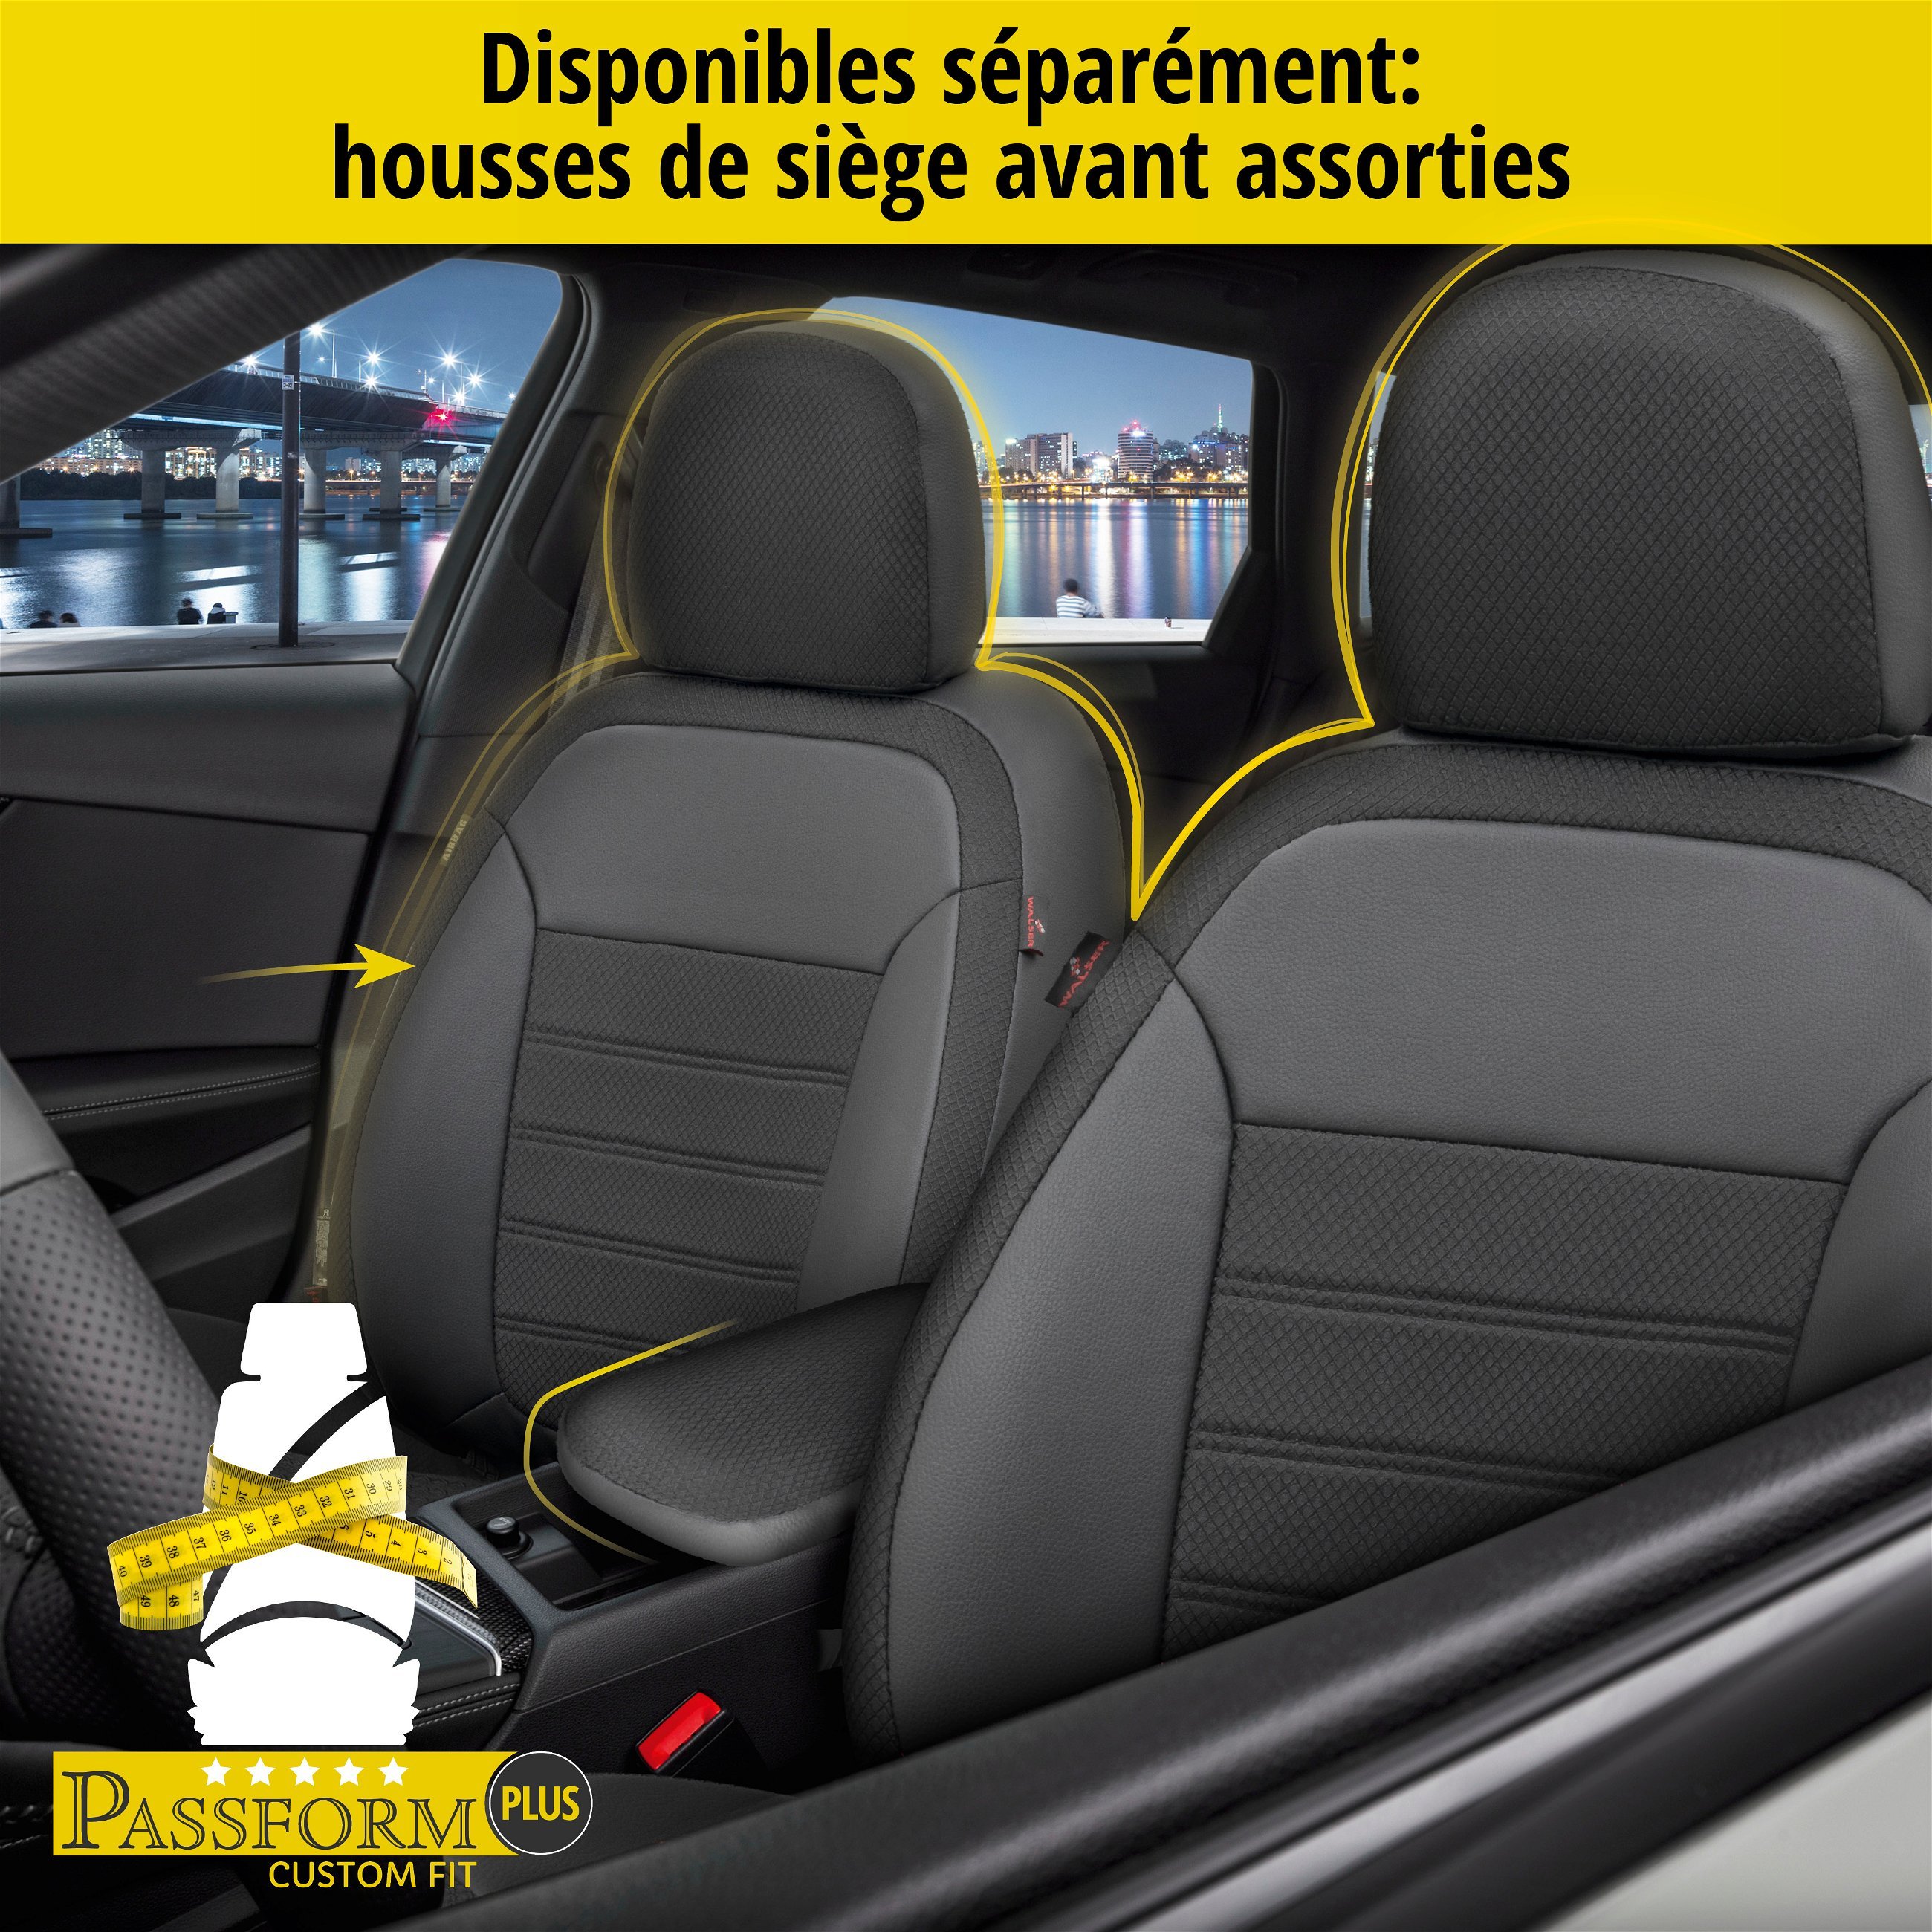 Housse de siège Aversa pour Opel Corsa D (S07) 07/2006-08/2014, 1 housse de siège arrière pour sièges normaux